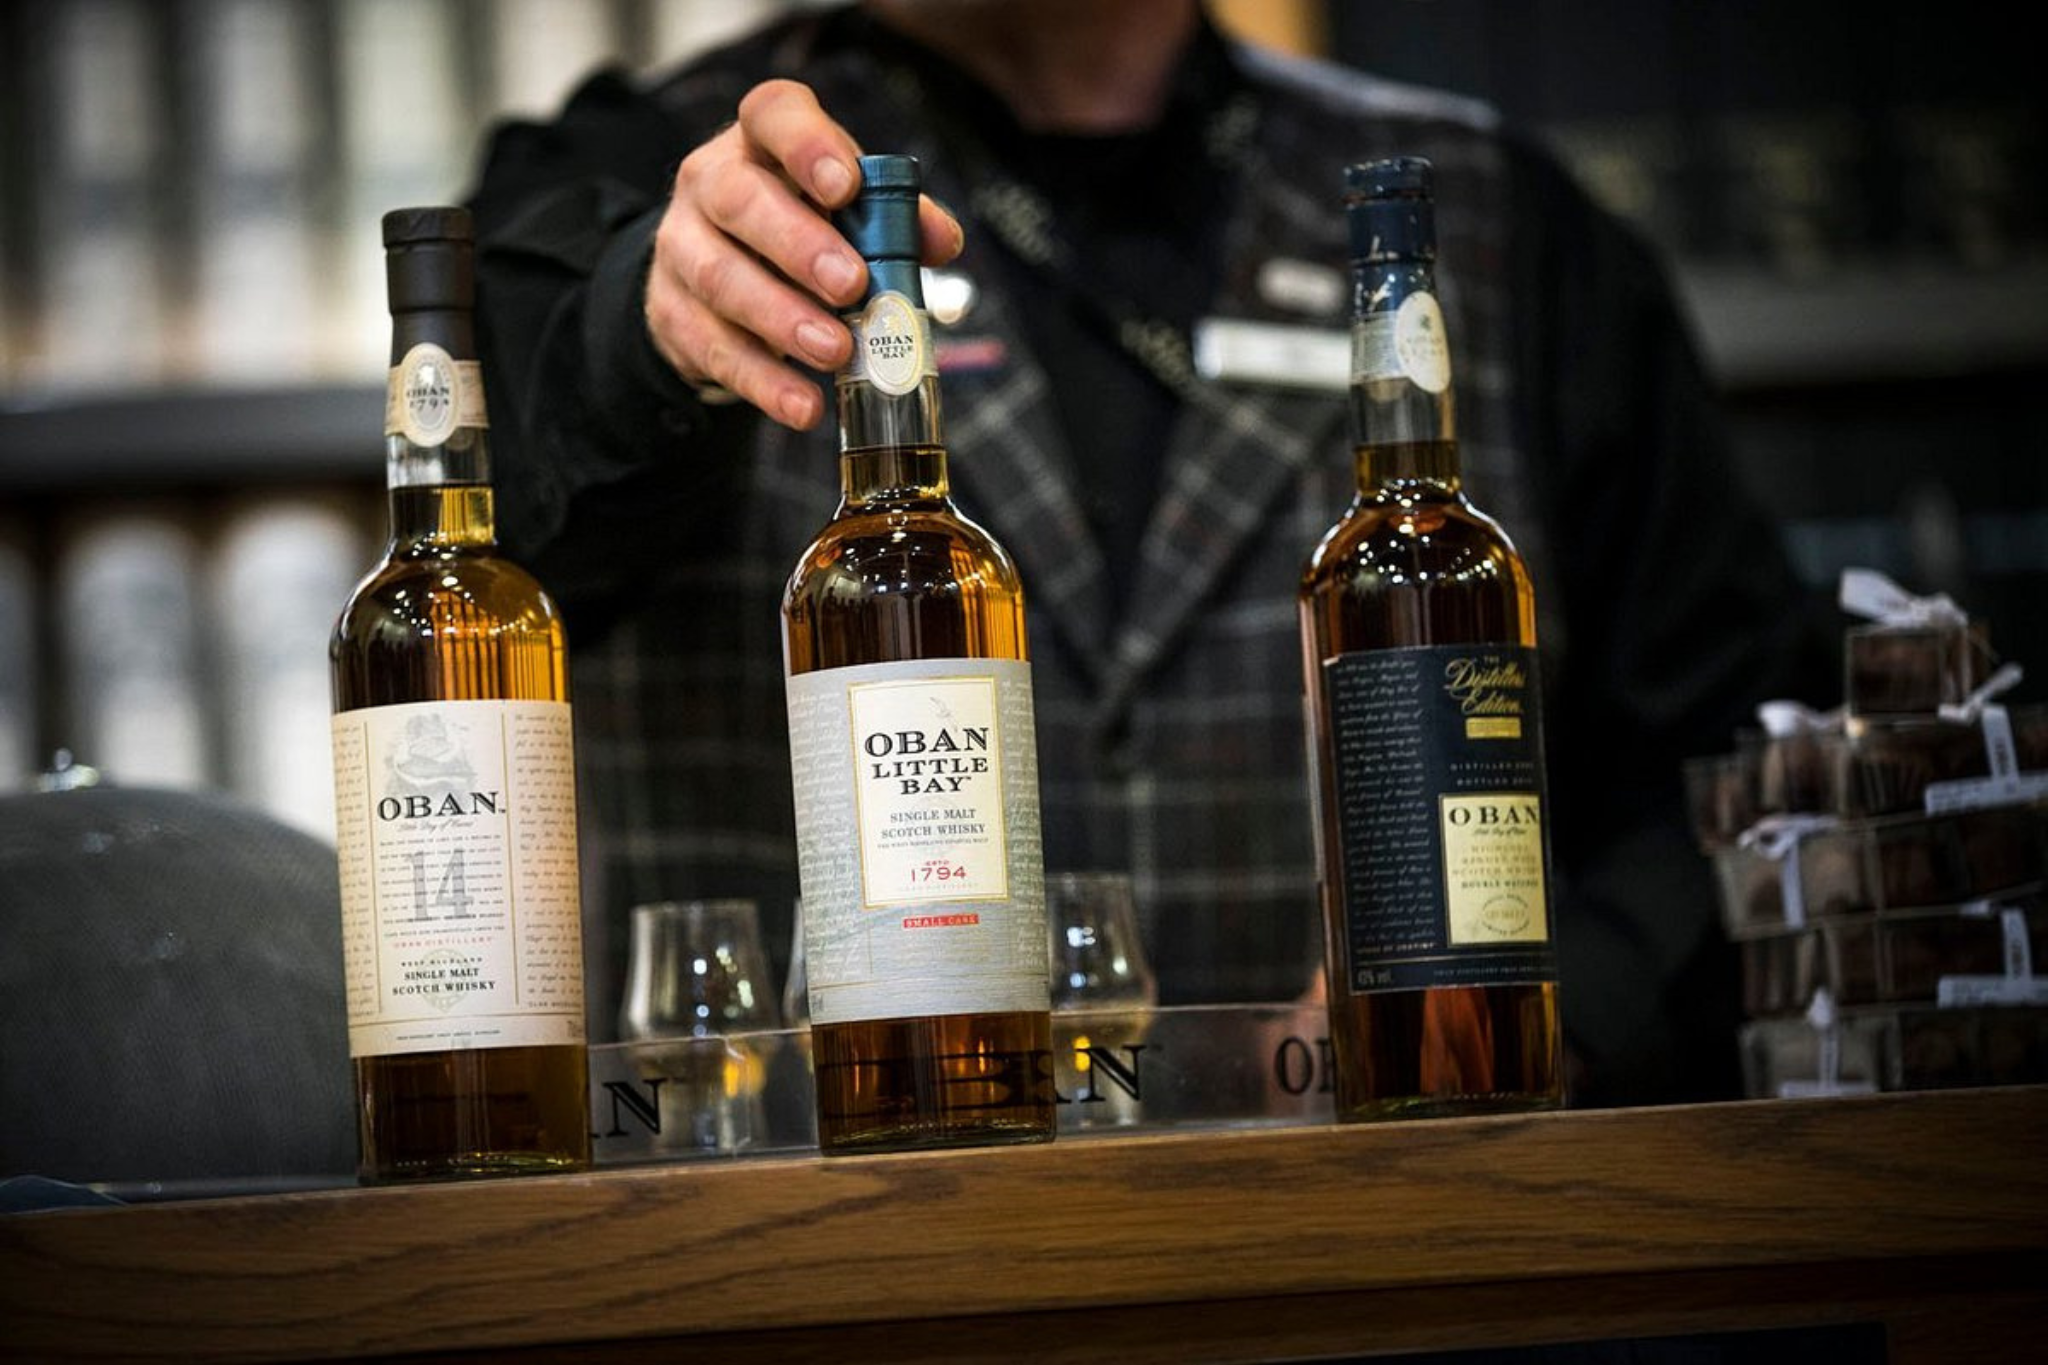 Oban whisky bottles - Oban Distillery Tours - Whiskywheels